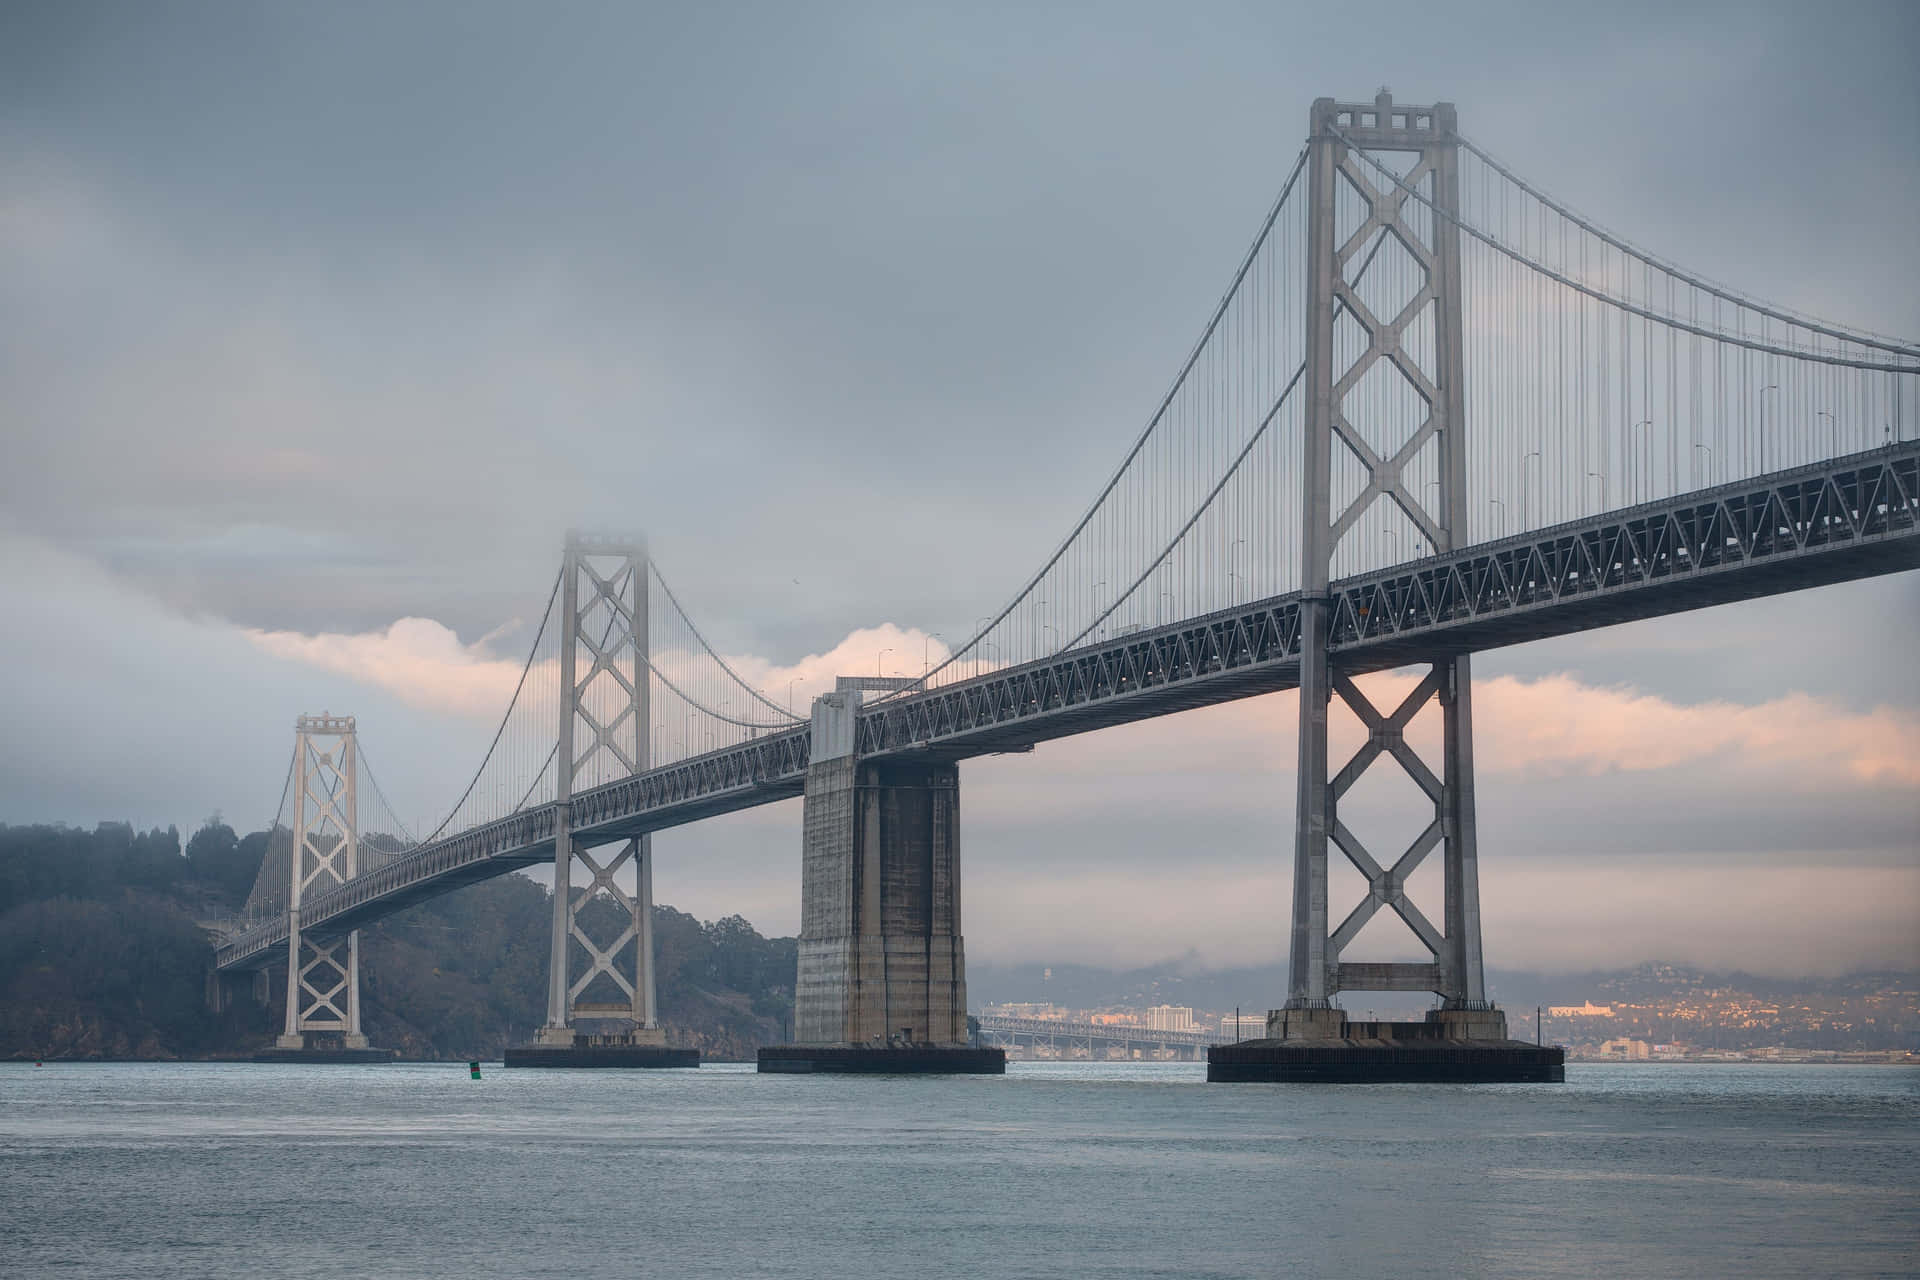 Strutturadel Bay Bridge Di Oakland - Il Migliore Sfondo Di San Francisco